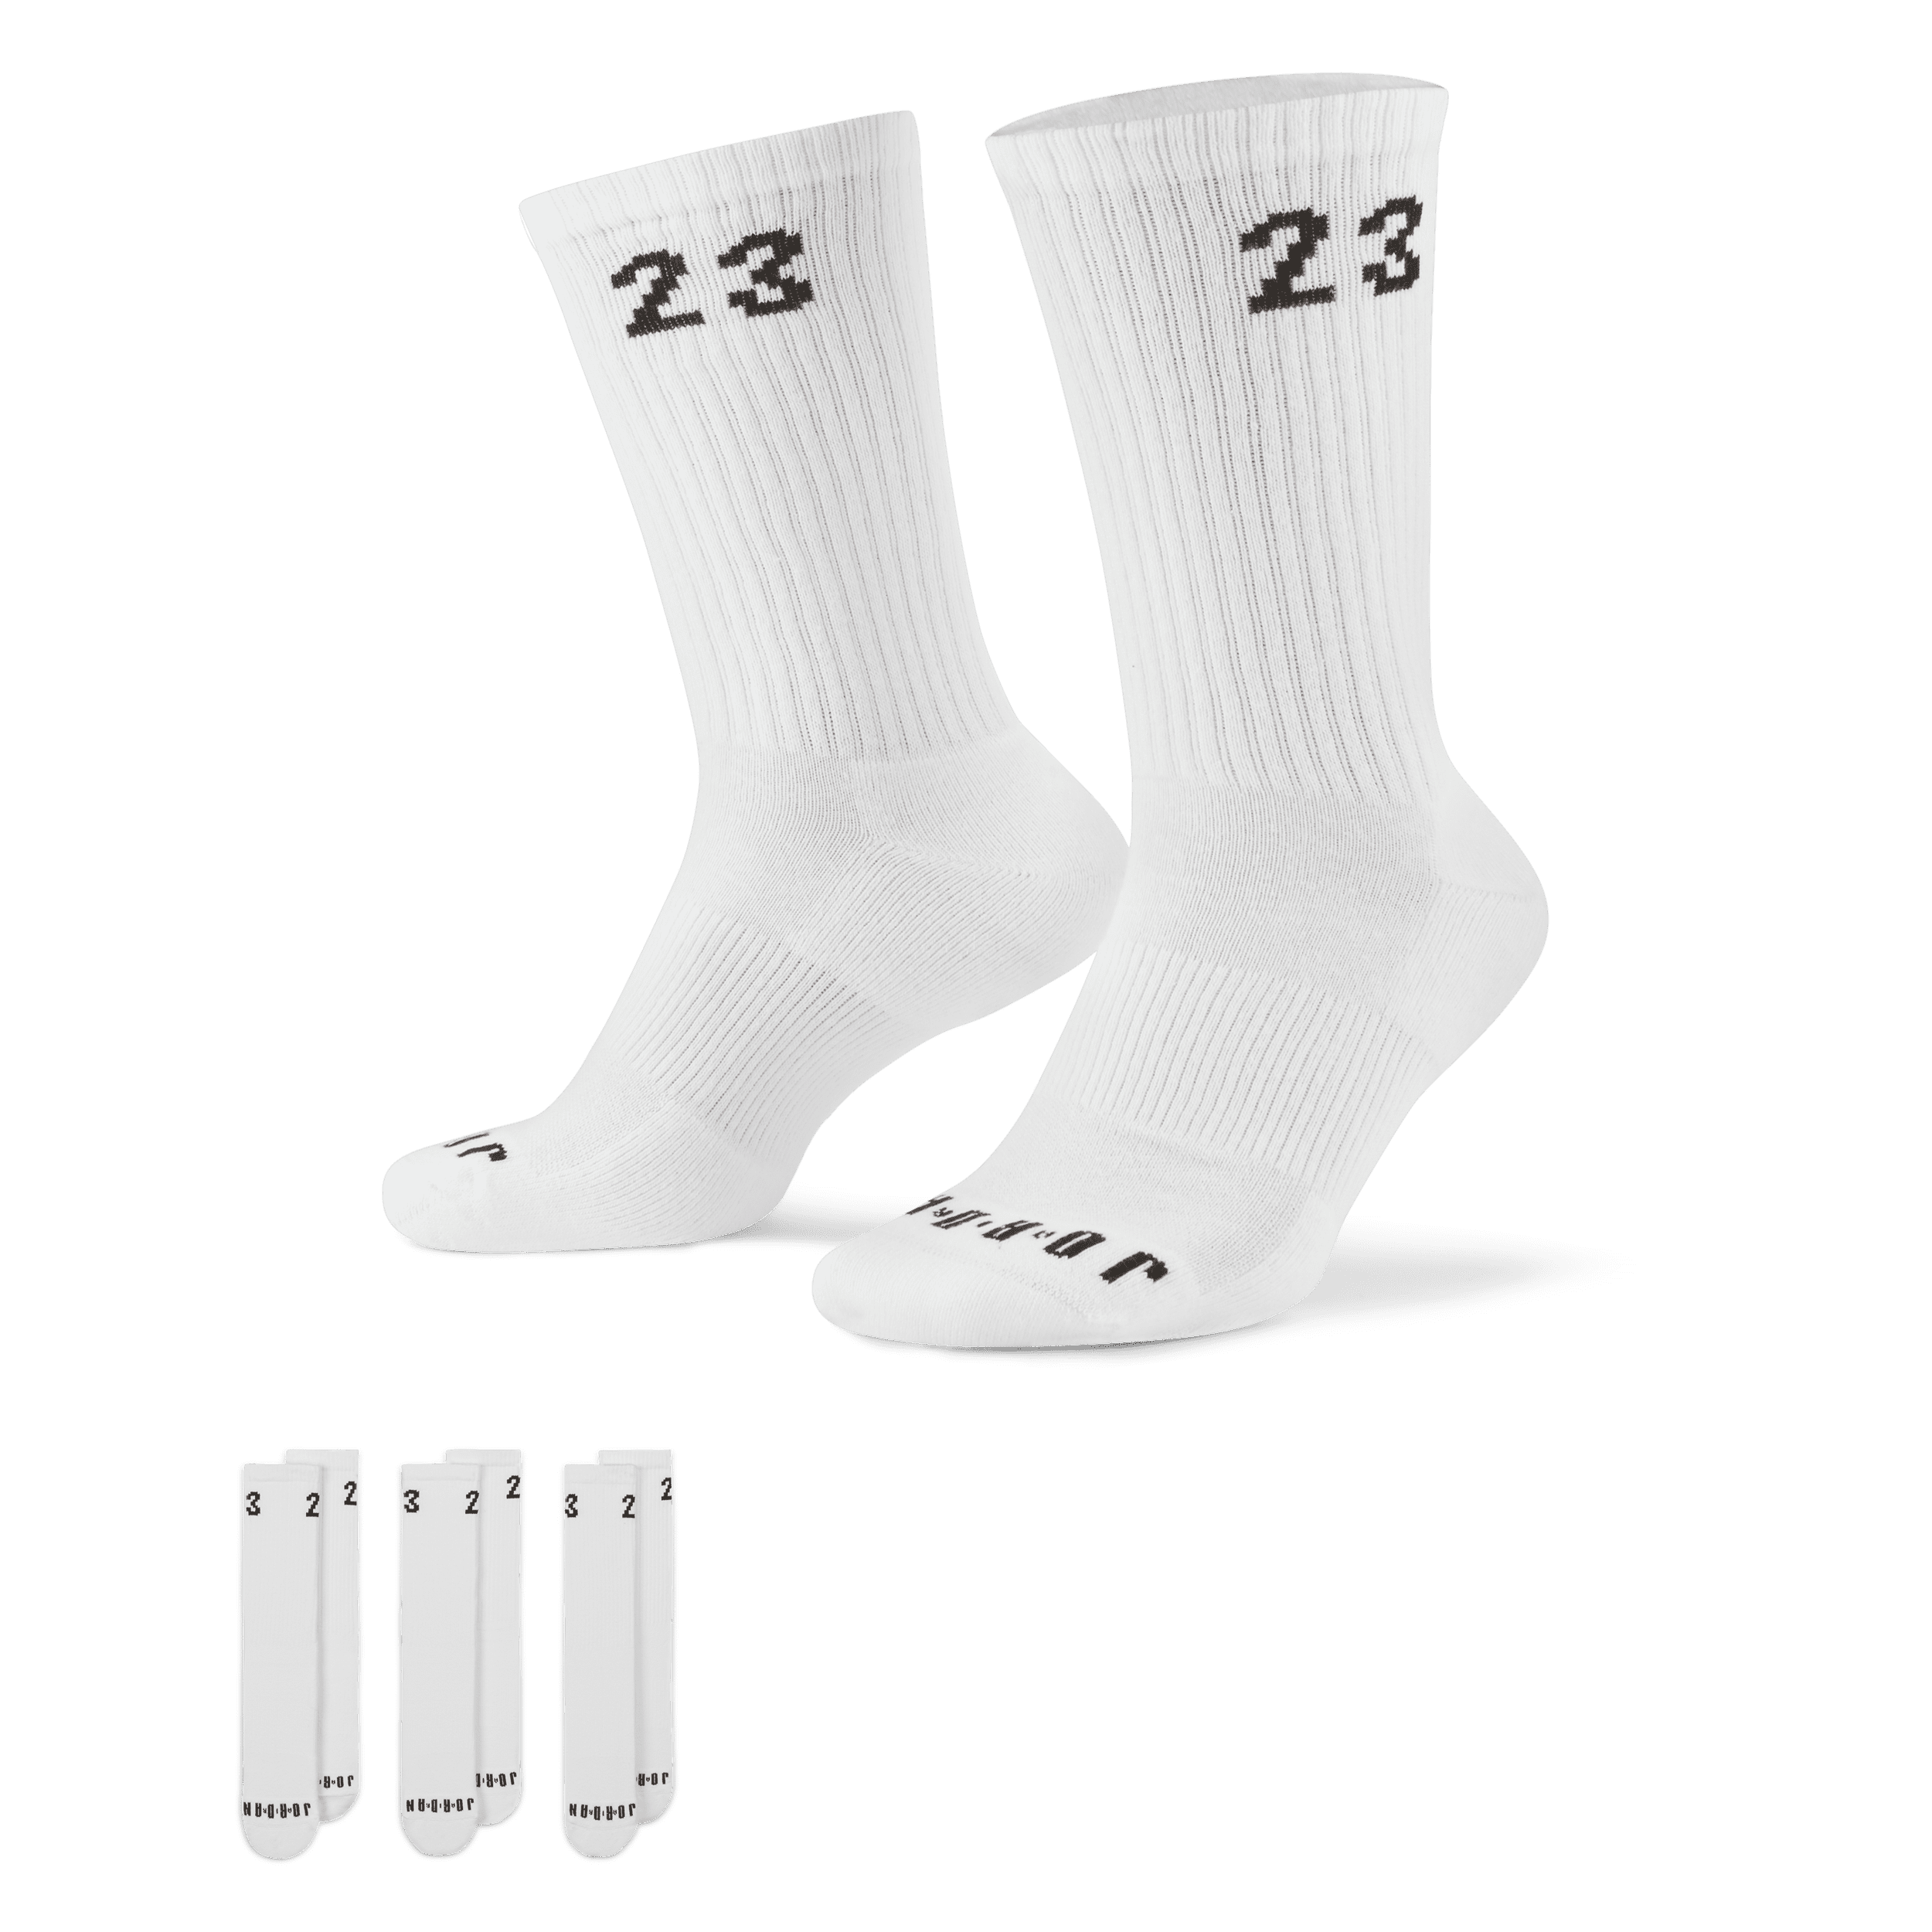 Jordan Essentials Crew sokken (3 paar) - Wit